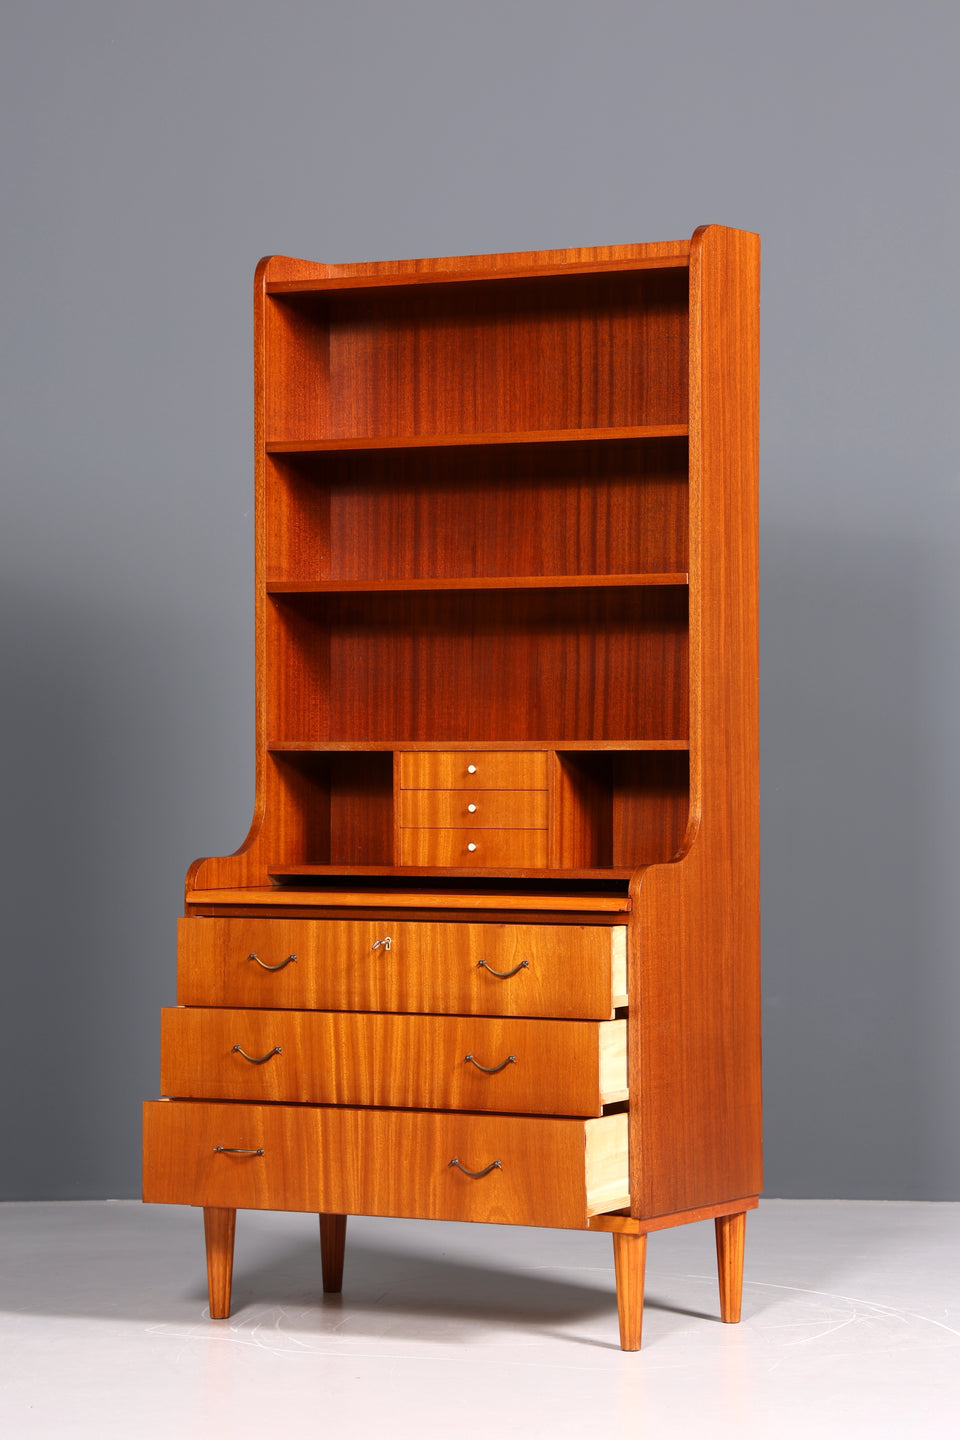 Wunderschöner Mid Century Schrank Sekretär Vintage Bücherregal Retro Highboard Regal 60s